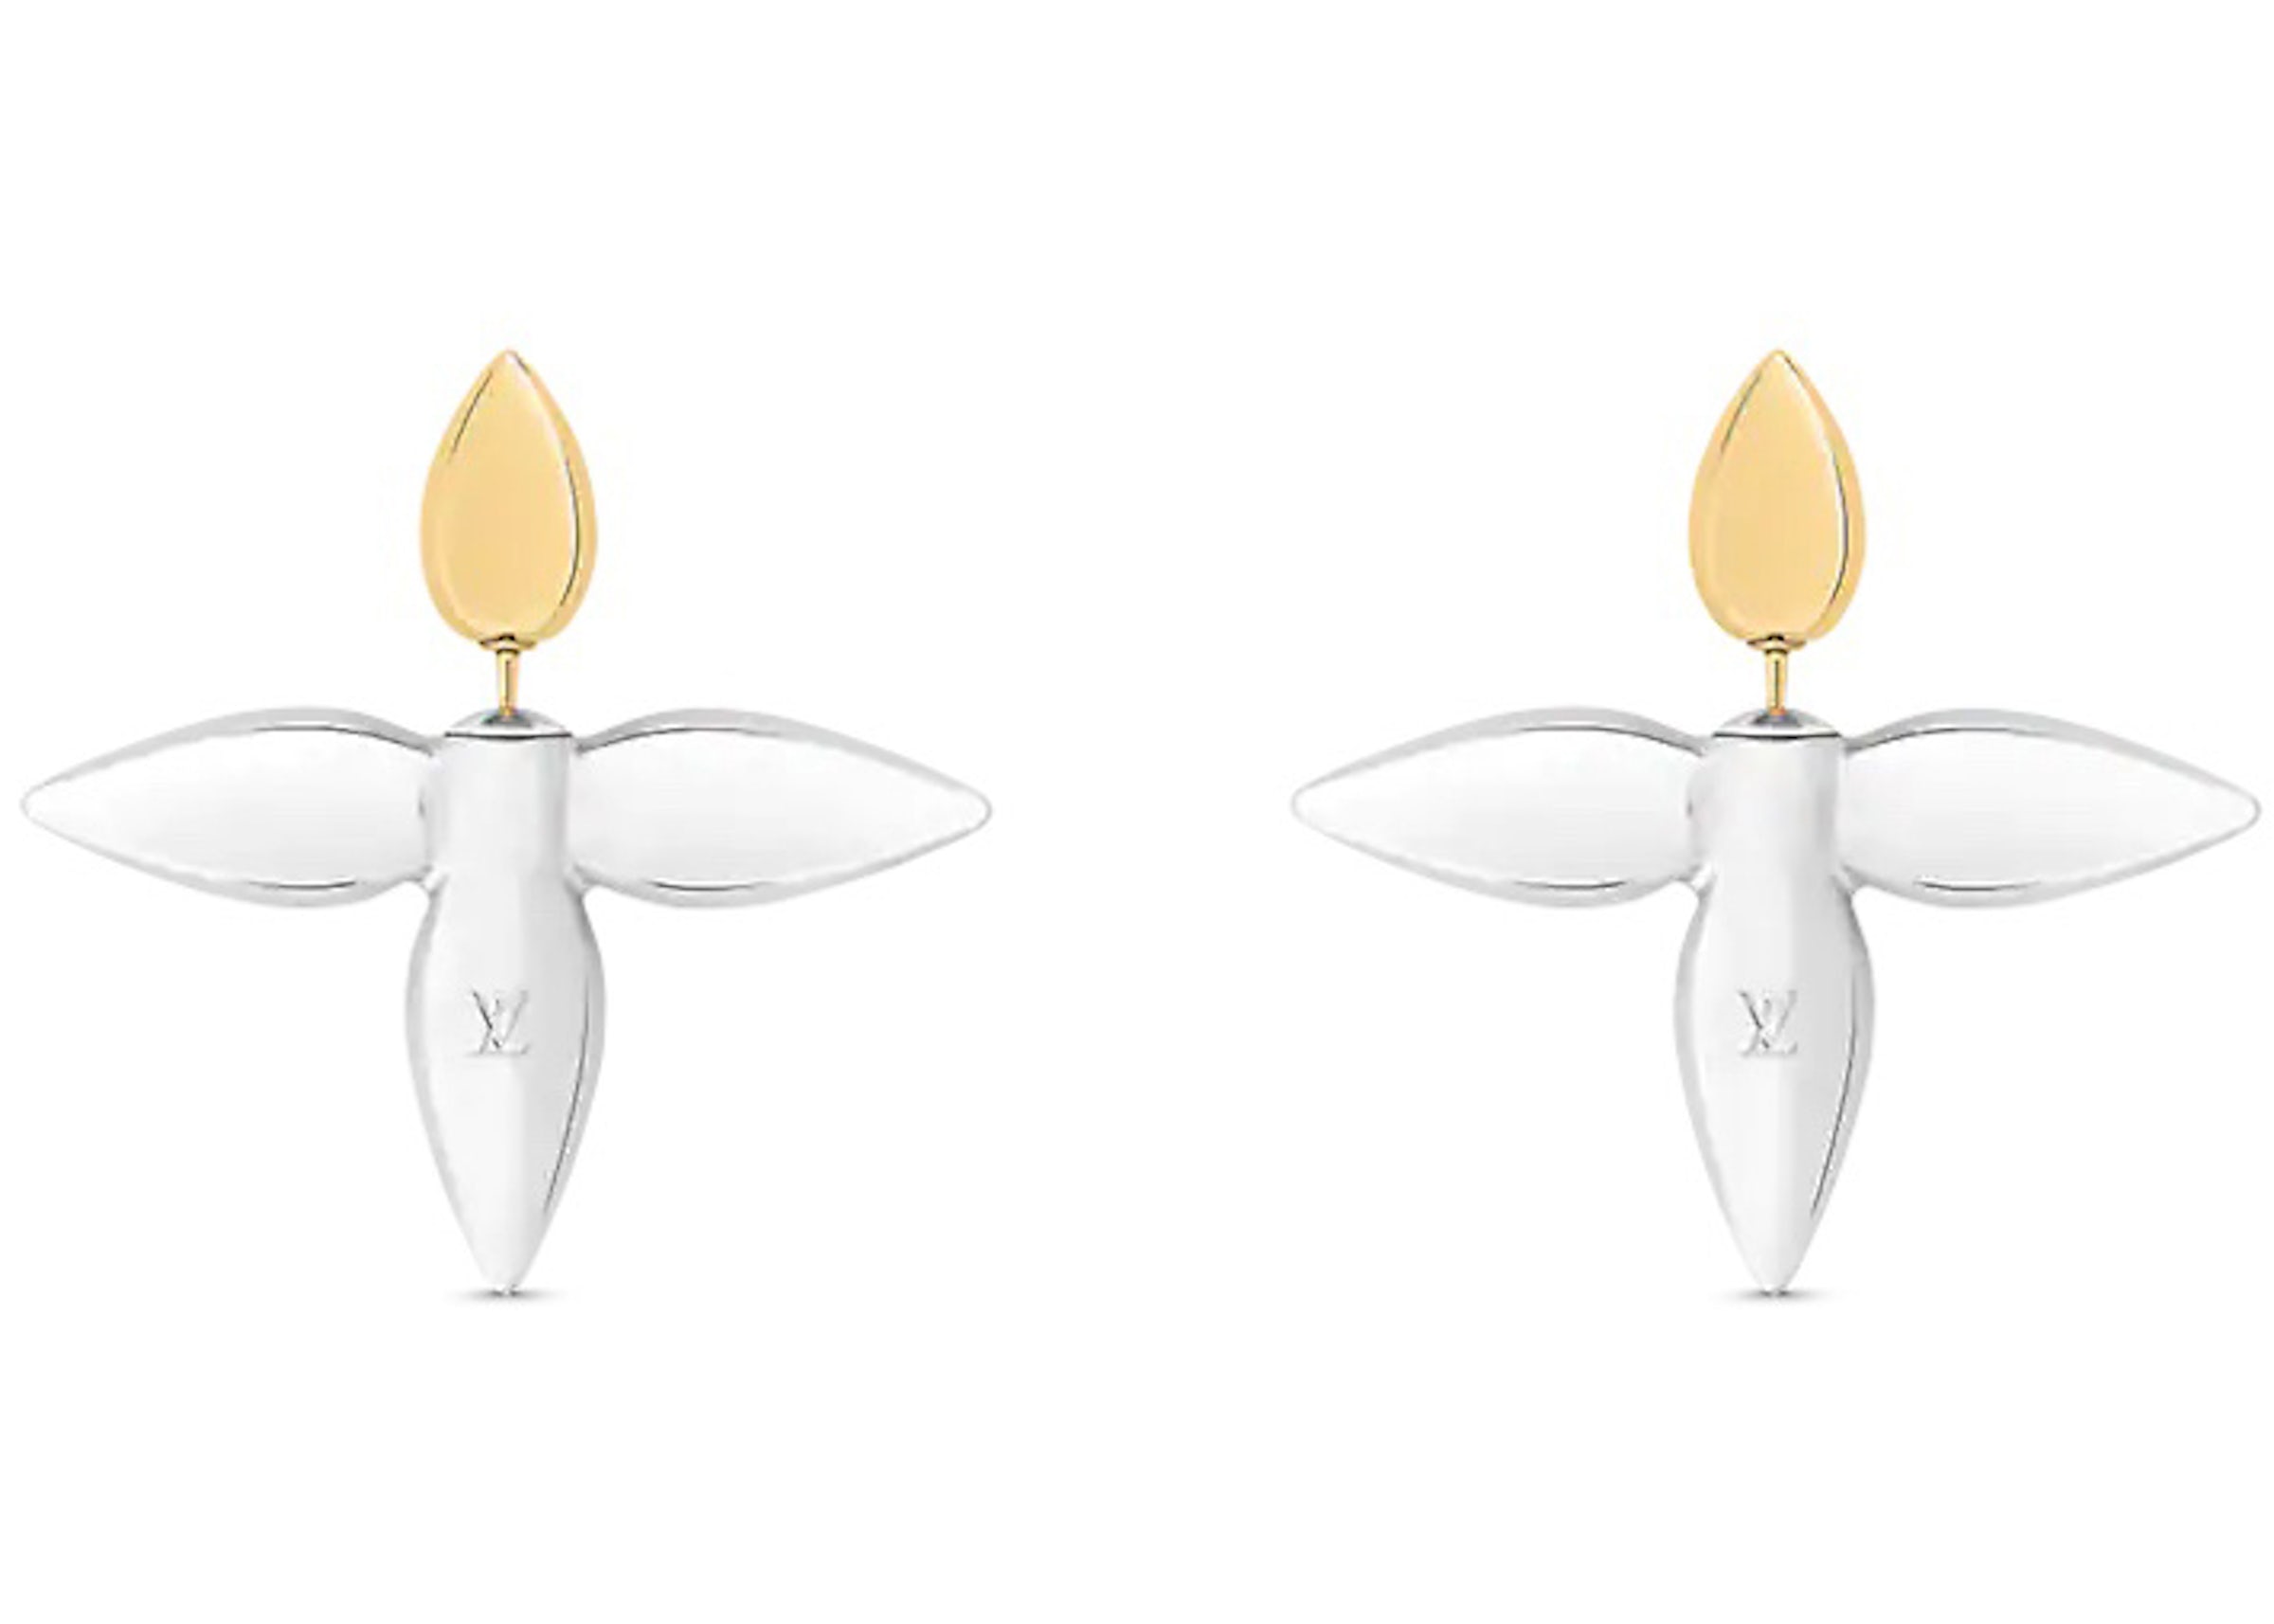 Louis Vuitton Louisette Macro Earrings Gold/Silver